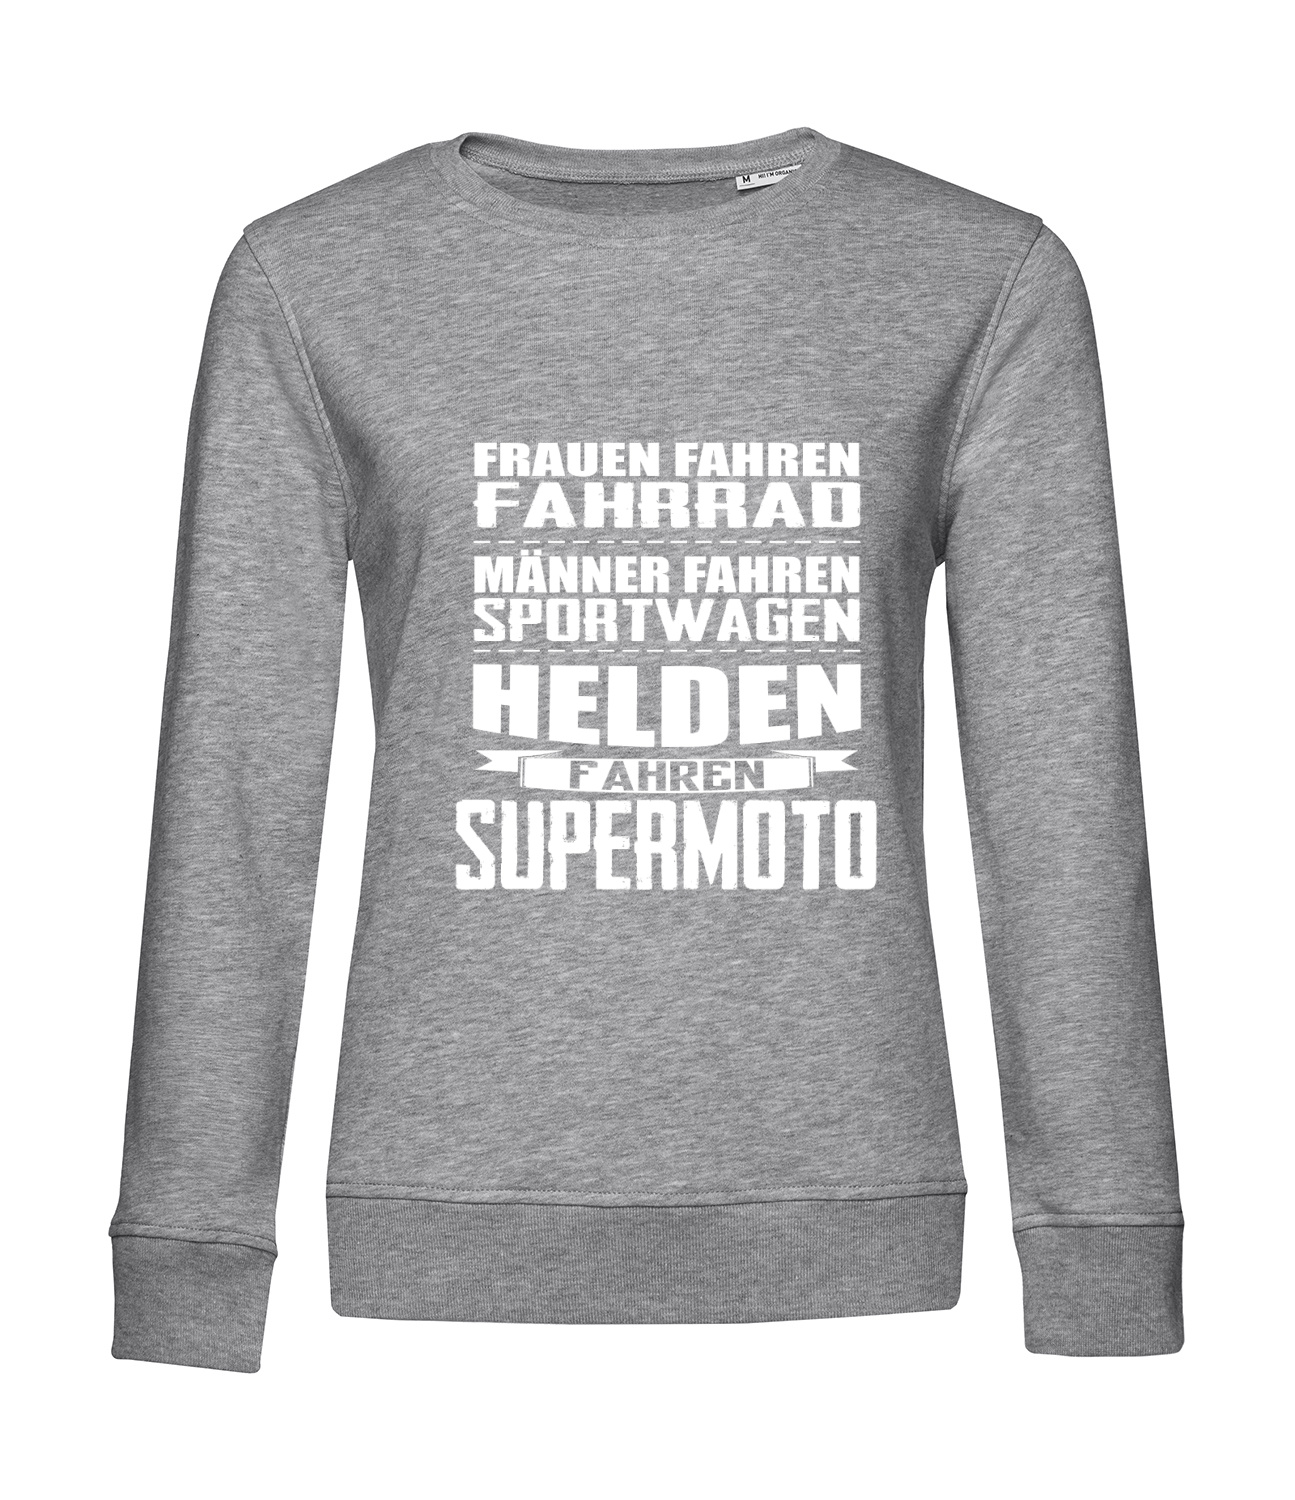 Nachhaltiges Sweatshirt Damen Helden fahren Supermoto